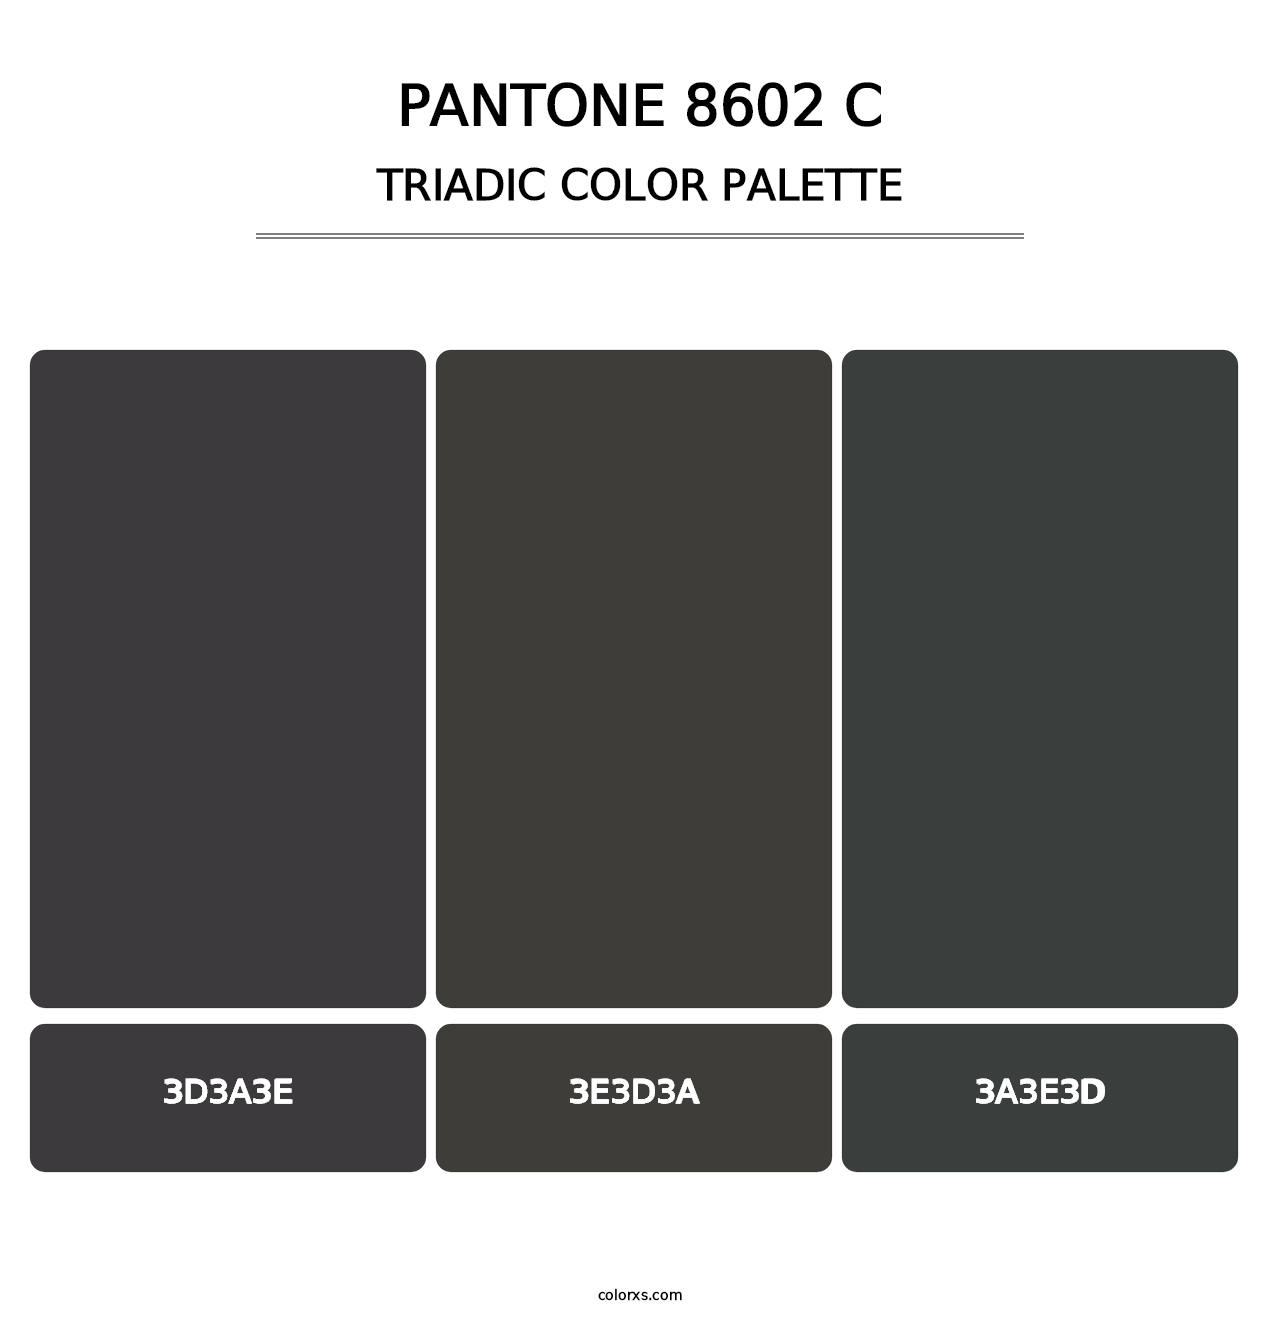 PANTONE 8602 C - Triadic Color Palette